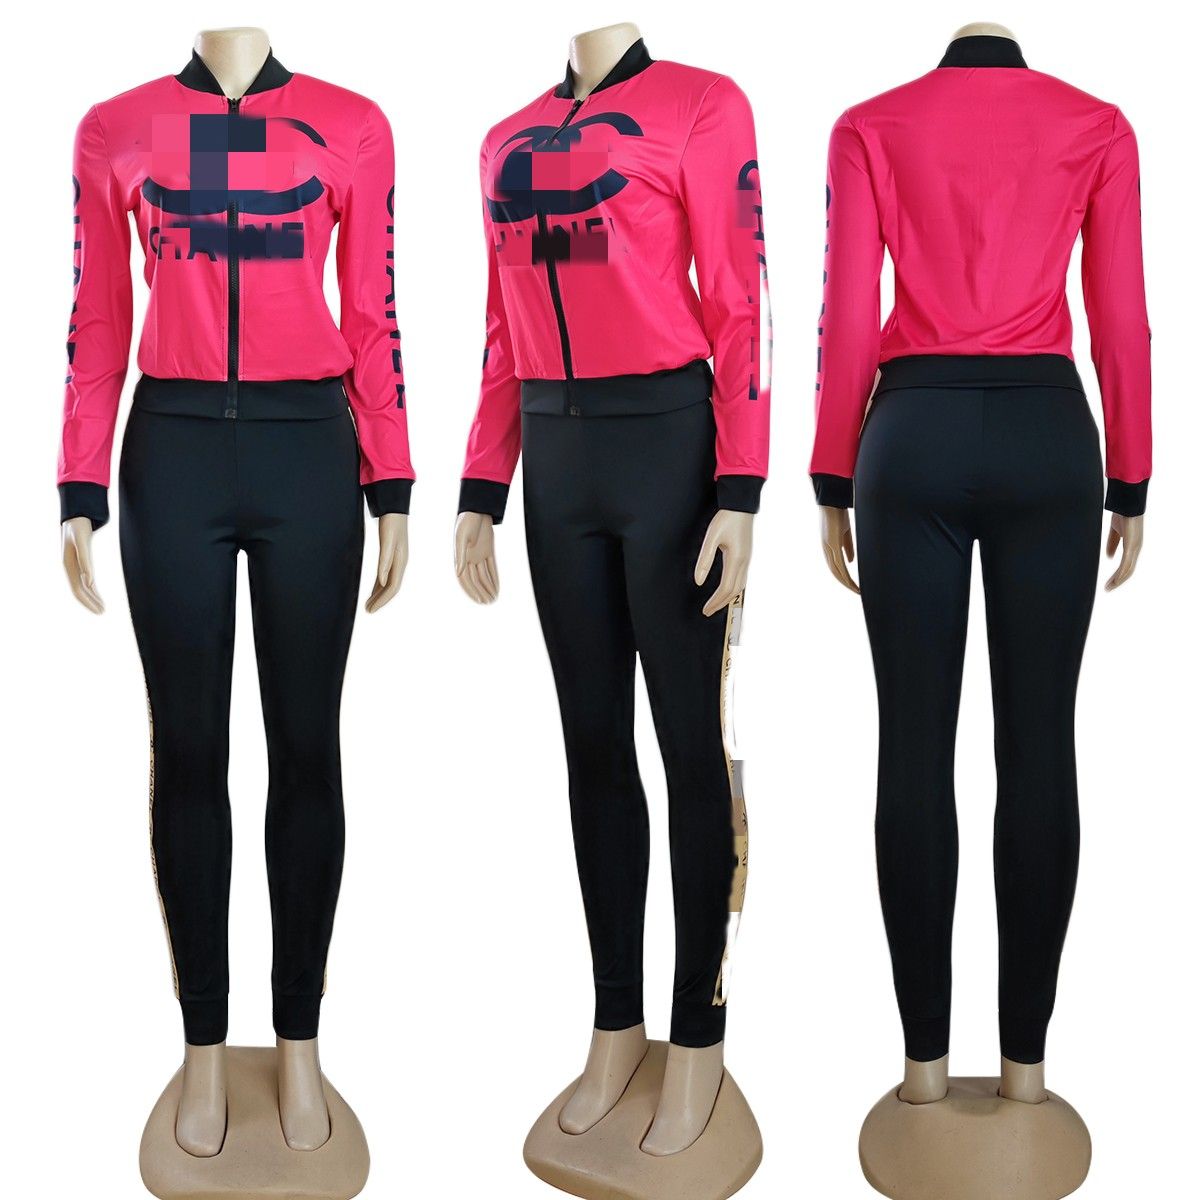 Frühling Zwei Stück Hosen Trainingsanzug Frauen Outfits Casual Print Zipper Jacke und Jogginghose Sets Freies Schiff